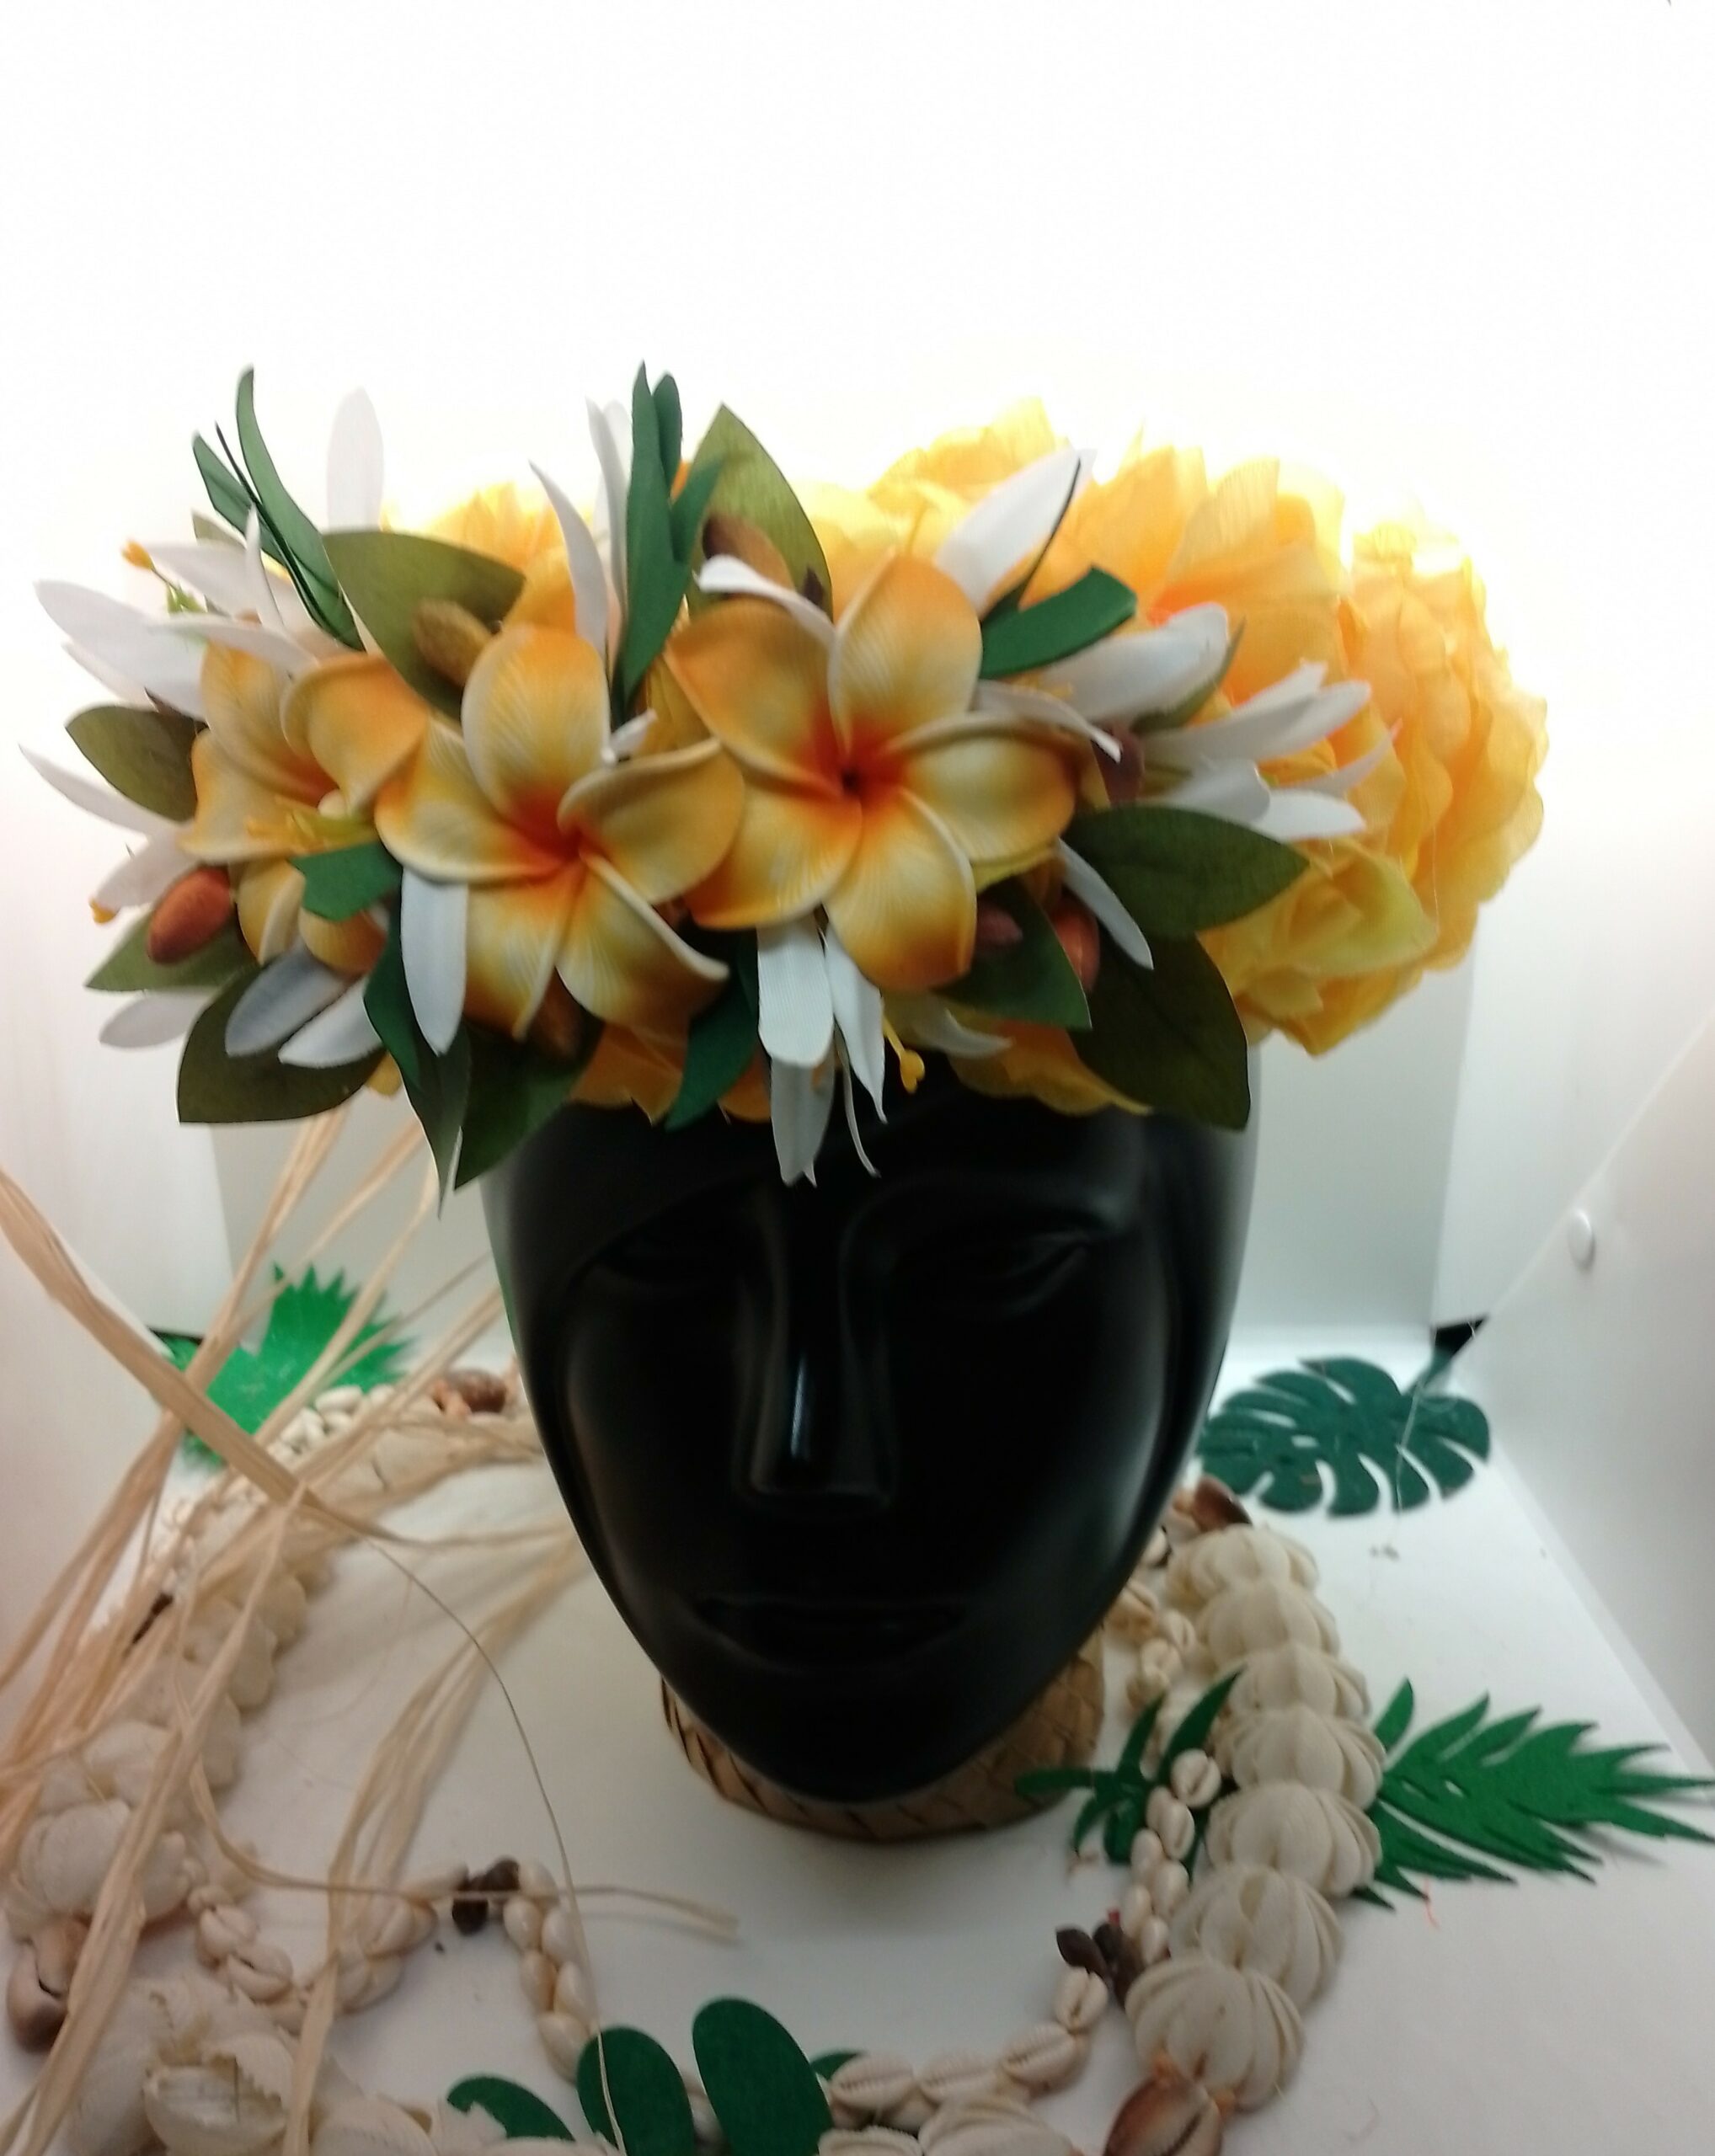 couronne florale de tête jaune trois tipaniers entourés de lys élancés blancs by Vaite.e.Tiare créations